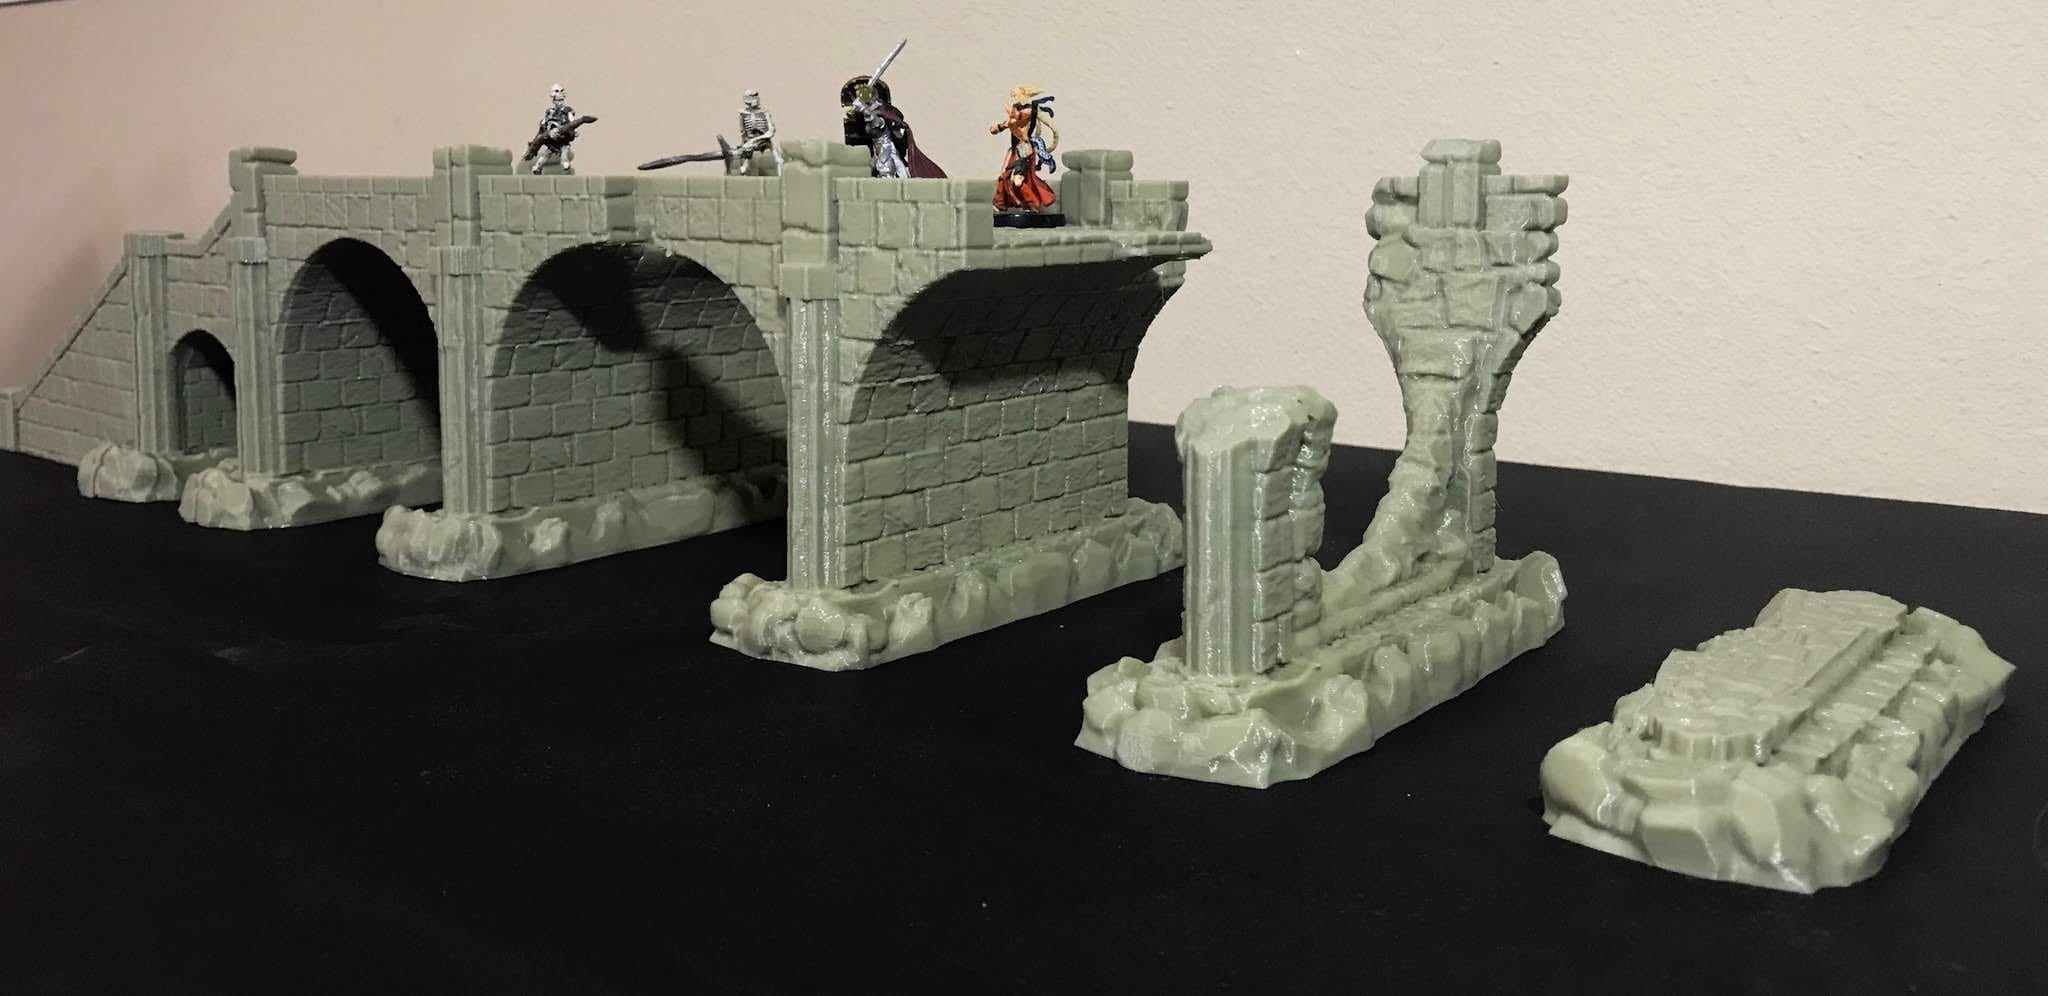 Stormguard - Ruined Bridge / 28mm Wargame / RPG 3d Printed Tabletop Terrain / RPG / Frostgrave / Age of Sigmar /